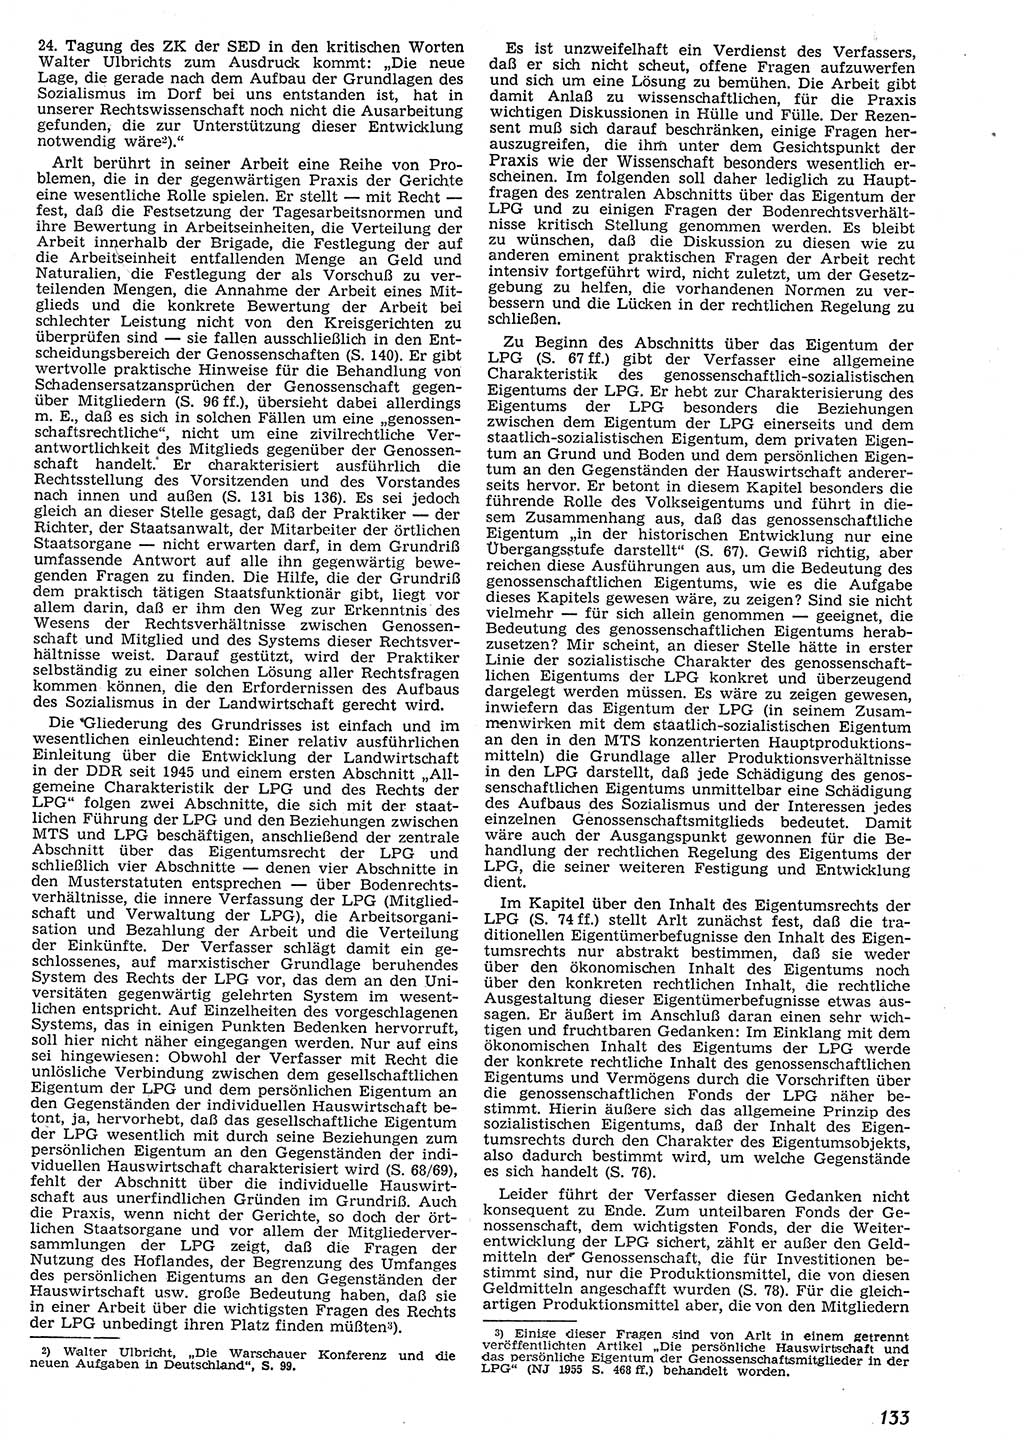 Neue Justiz (NJ), Zeitschrift für Recht und Rechtswissenschaft [Deutsche Demokratische Republik (DDR)], 10. Jahrgang 1956, Seite 133 (NJ DDR 1956, S. 133)